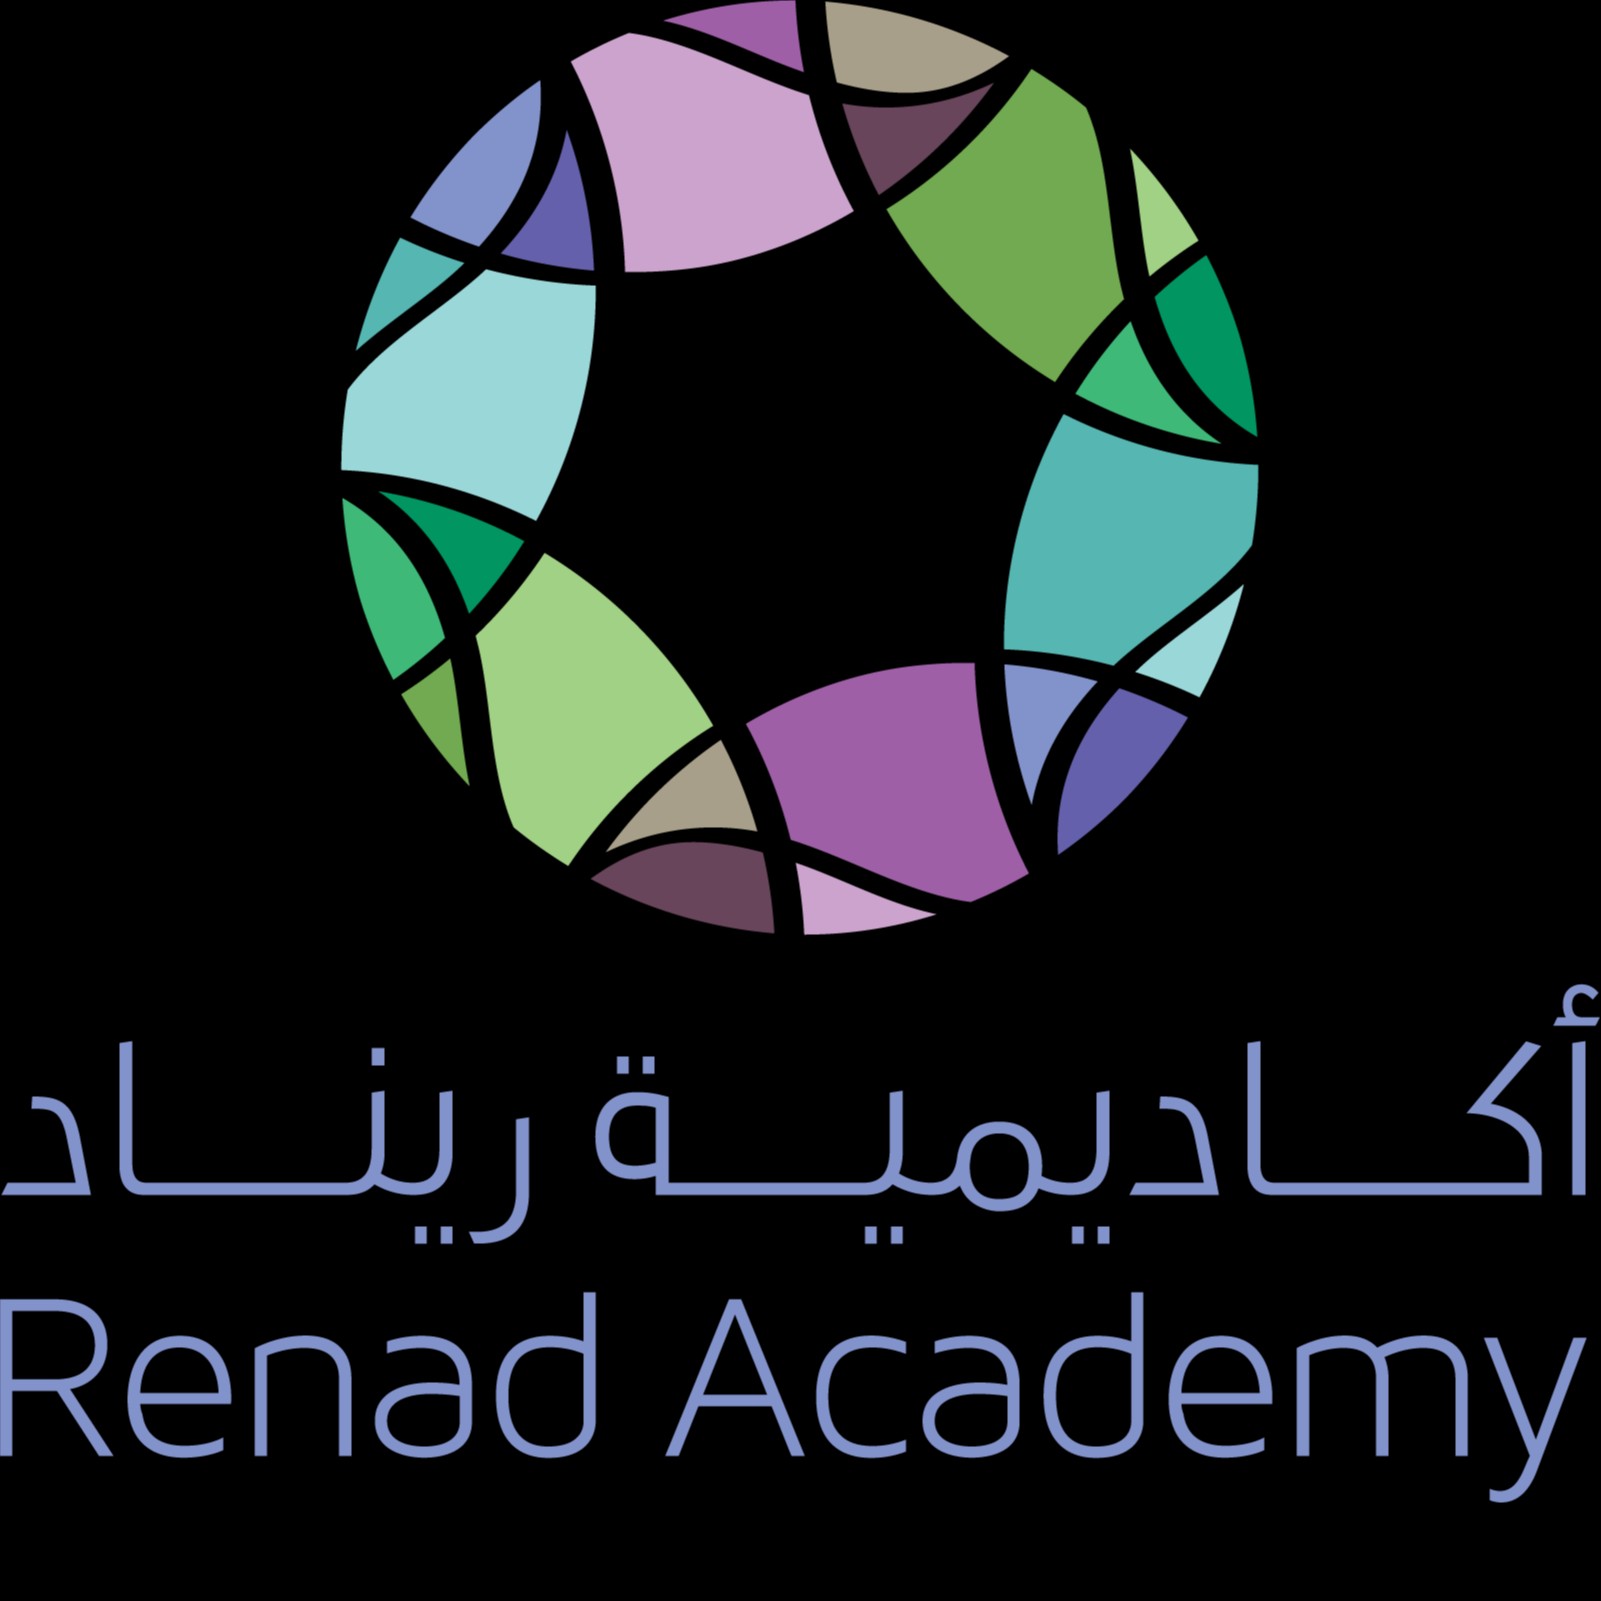 Renad Academy Logo